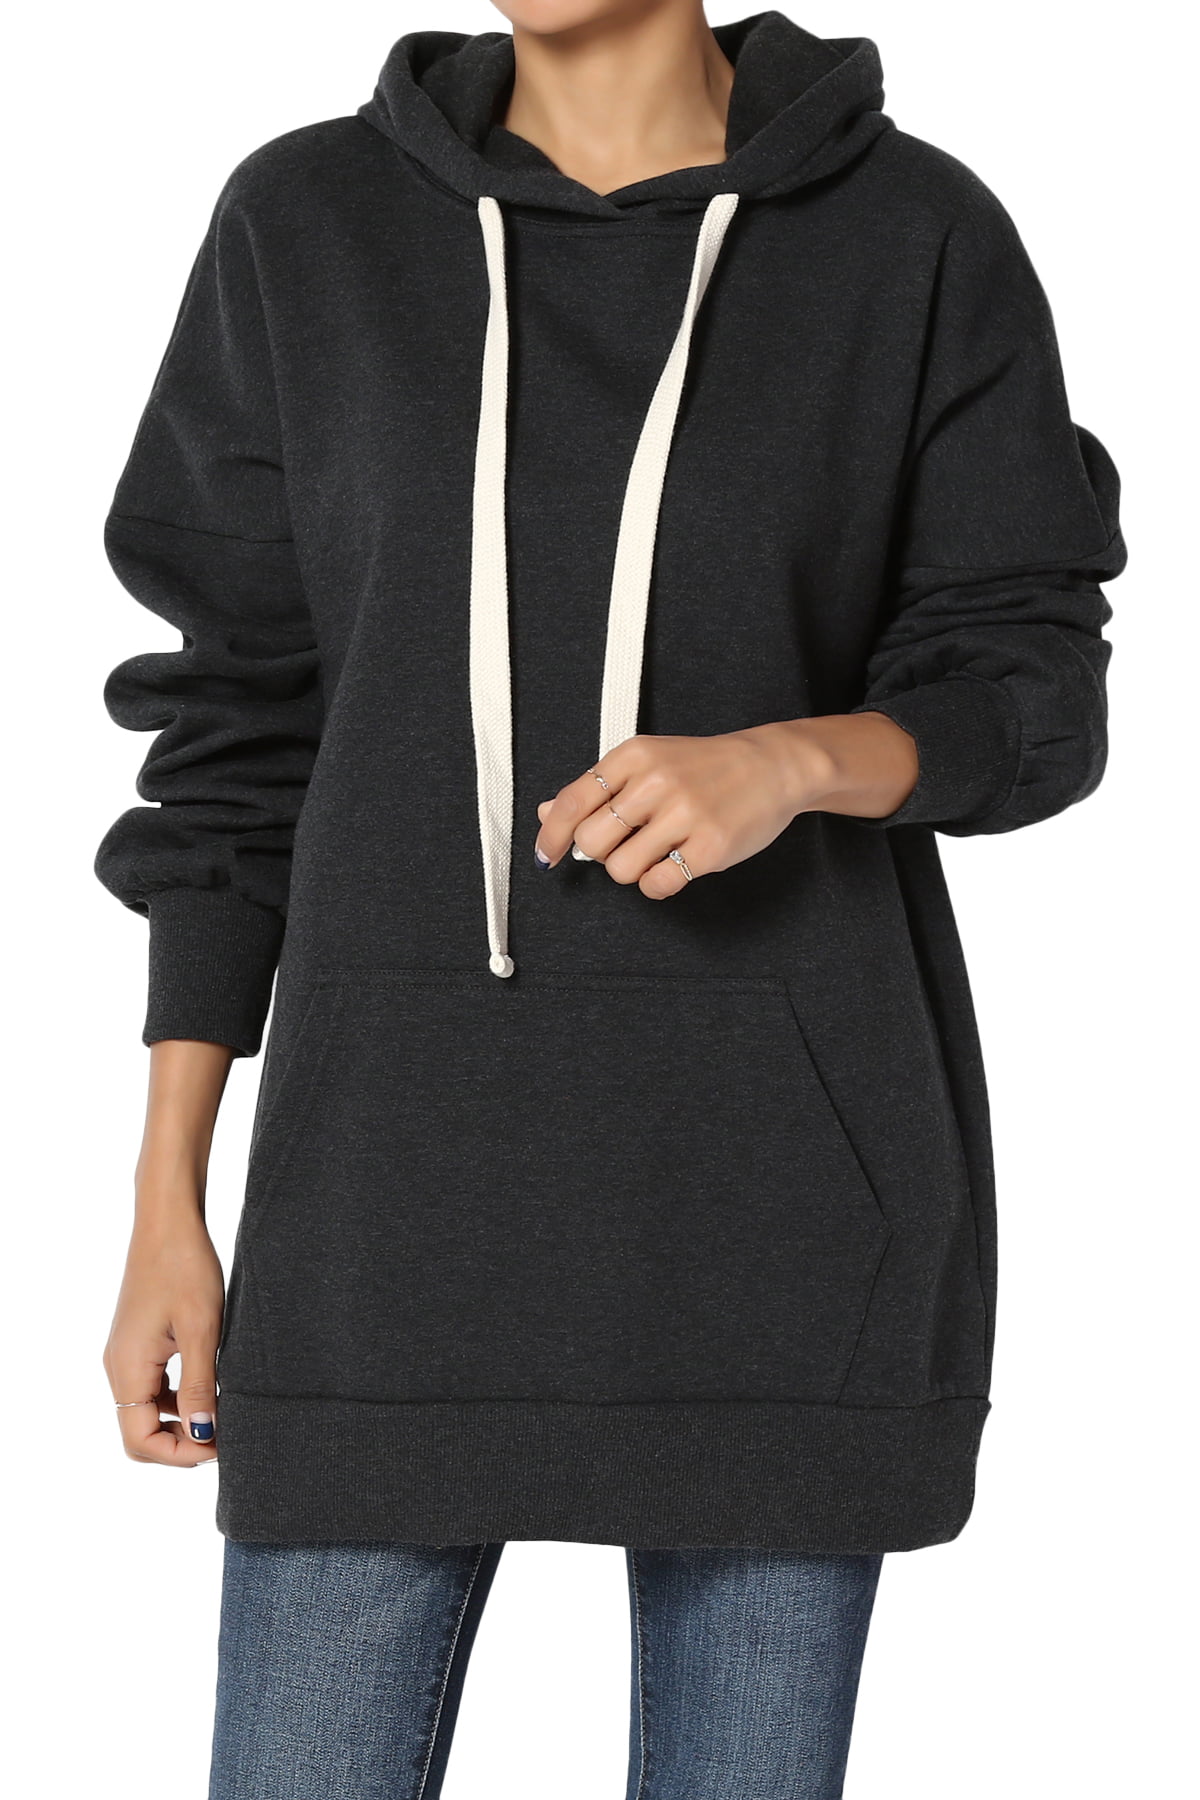 TheMogan Women's S~3X Oversized Fleece Hoodie Pocket Hooded Pullover ...